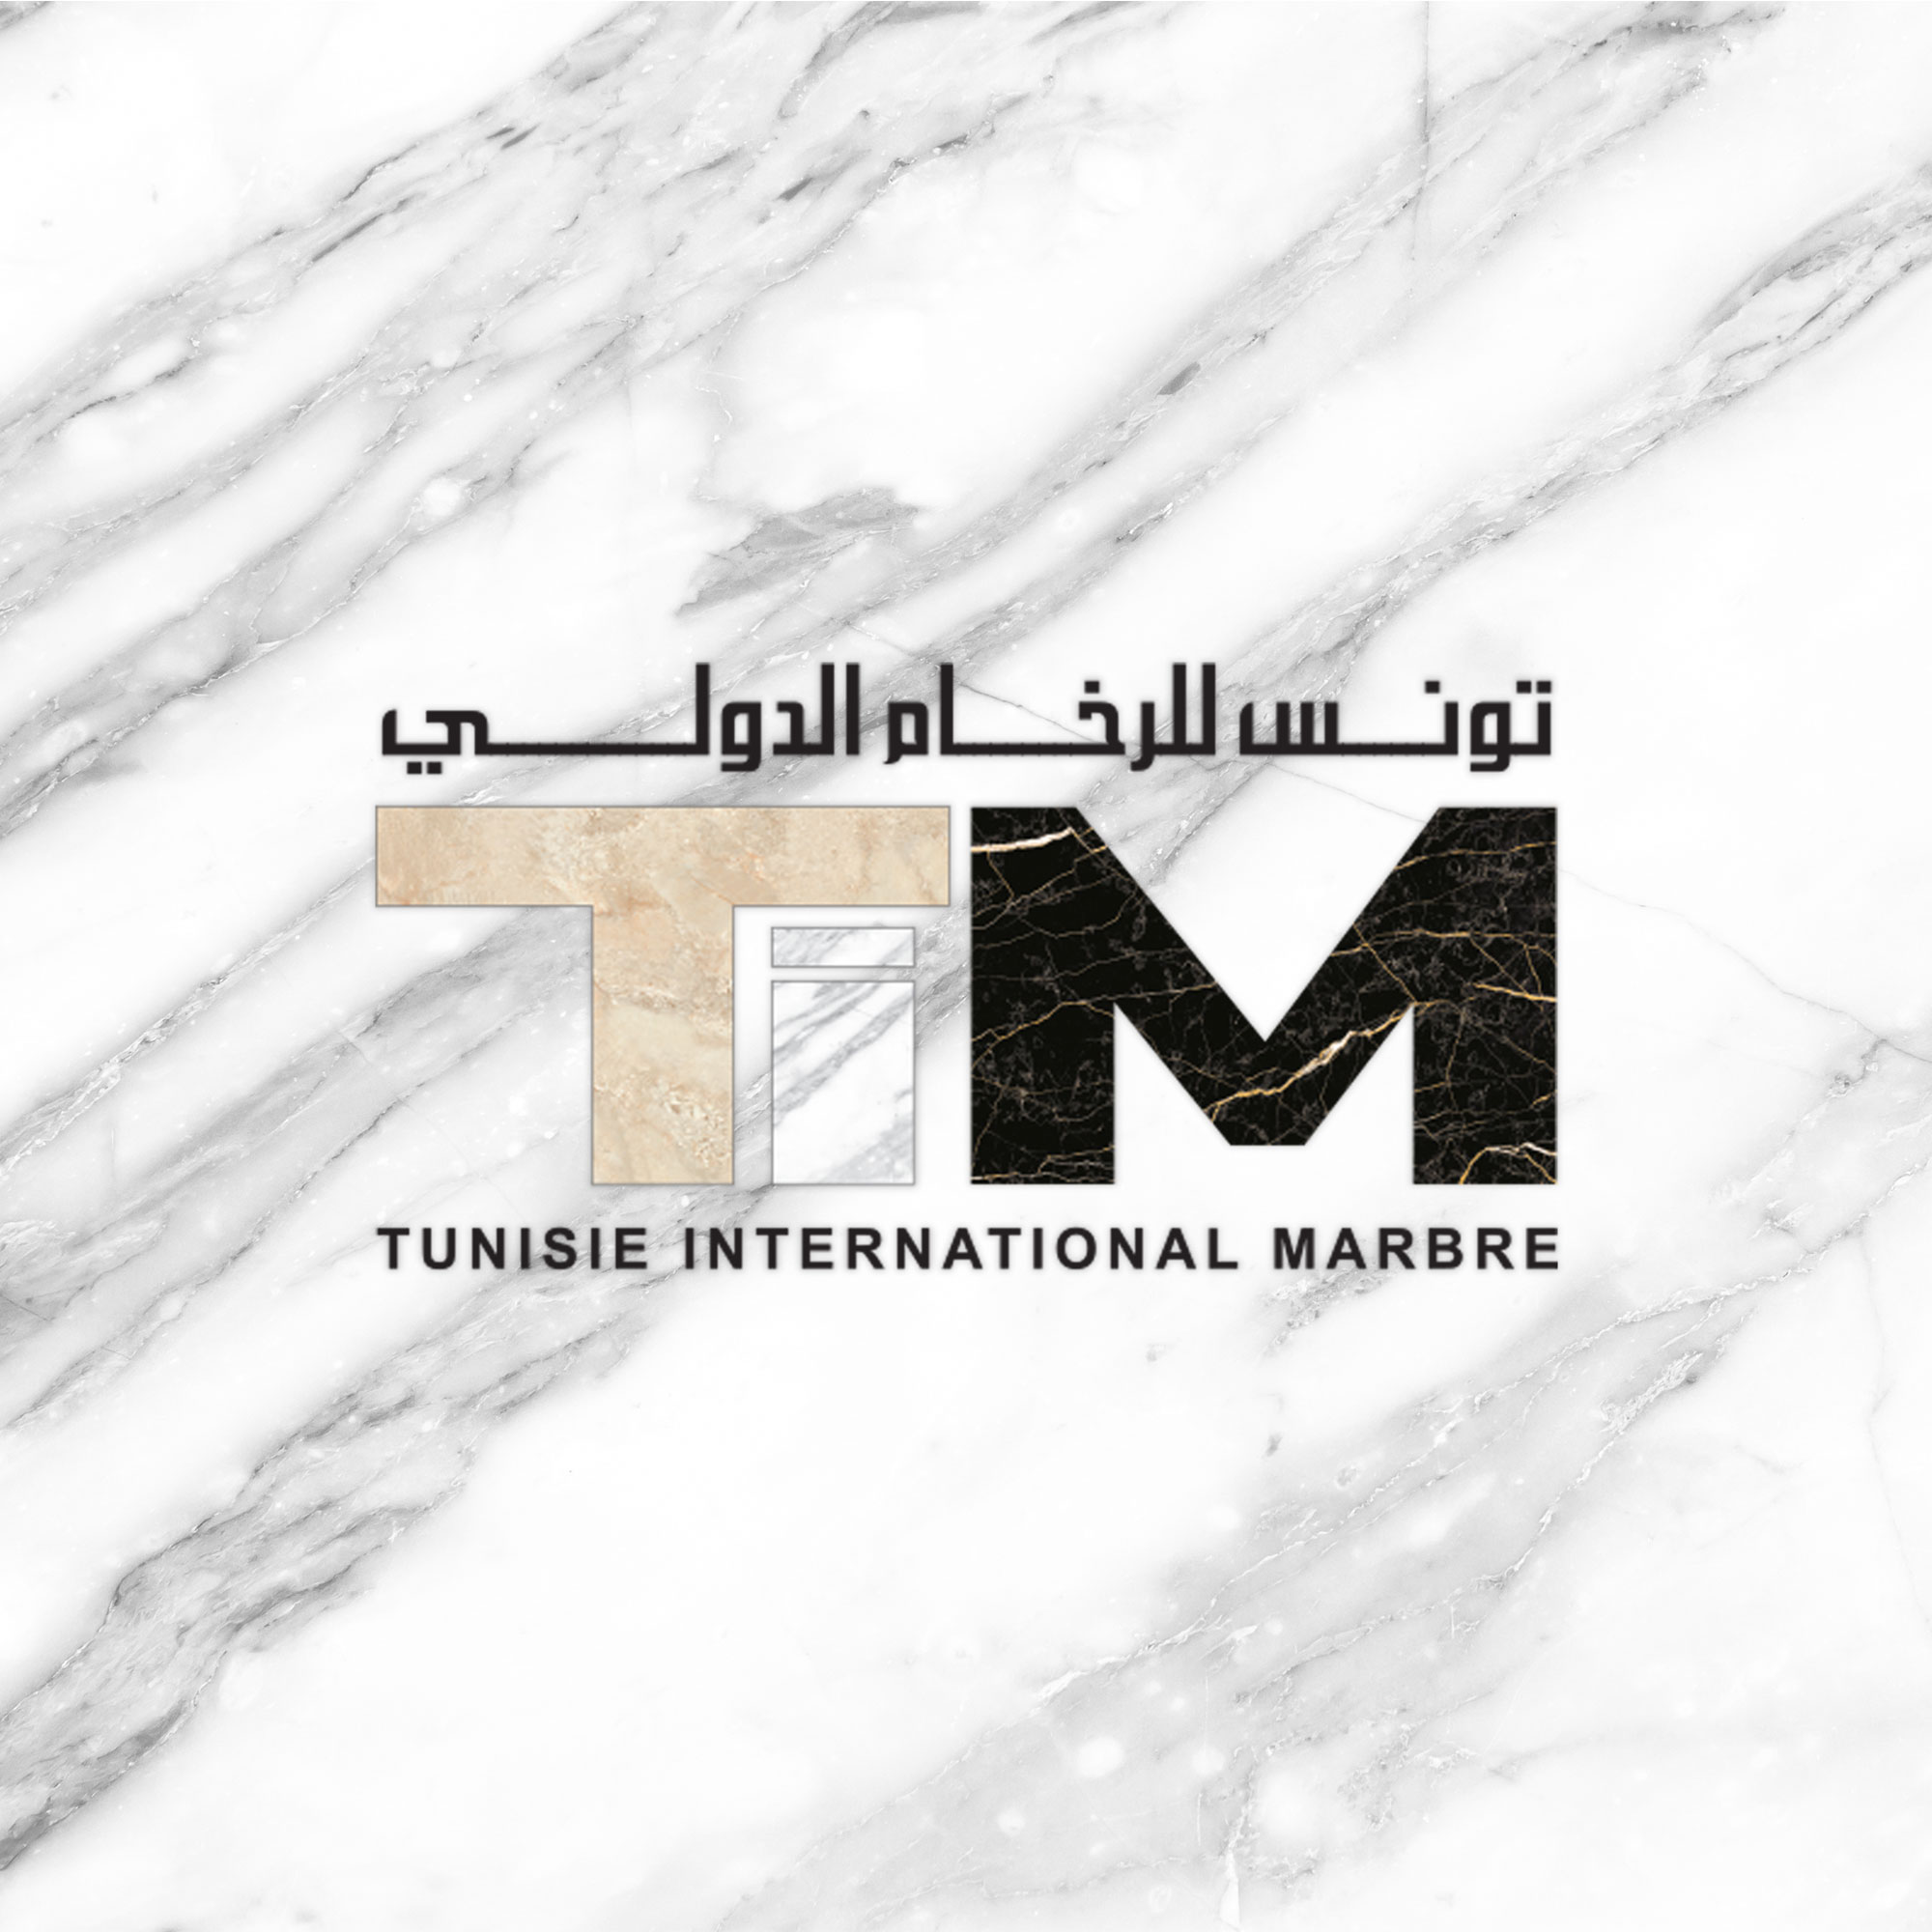 TUNISIE INTERNATIONAL MARBRE